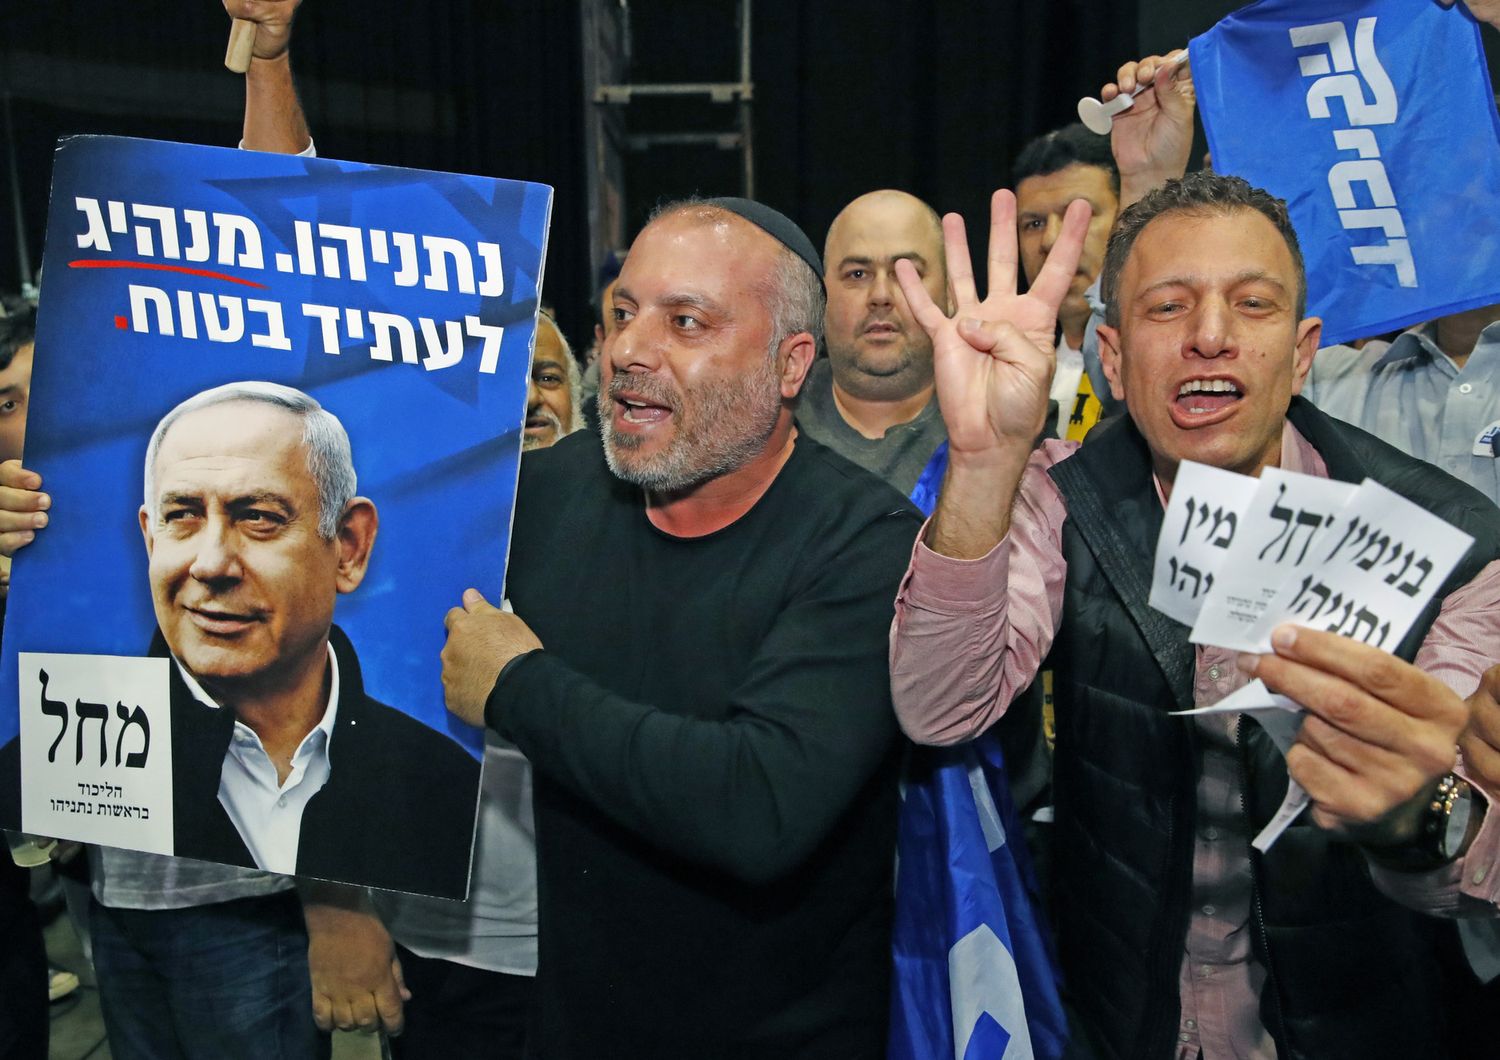 Sostenitori di Netanyahu festeggiano